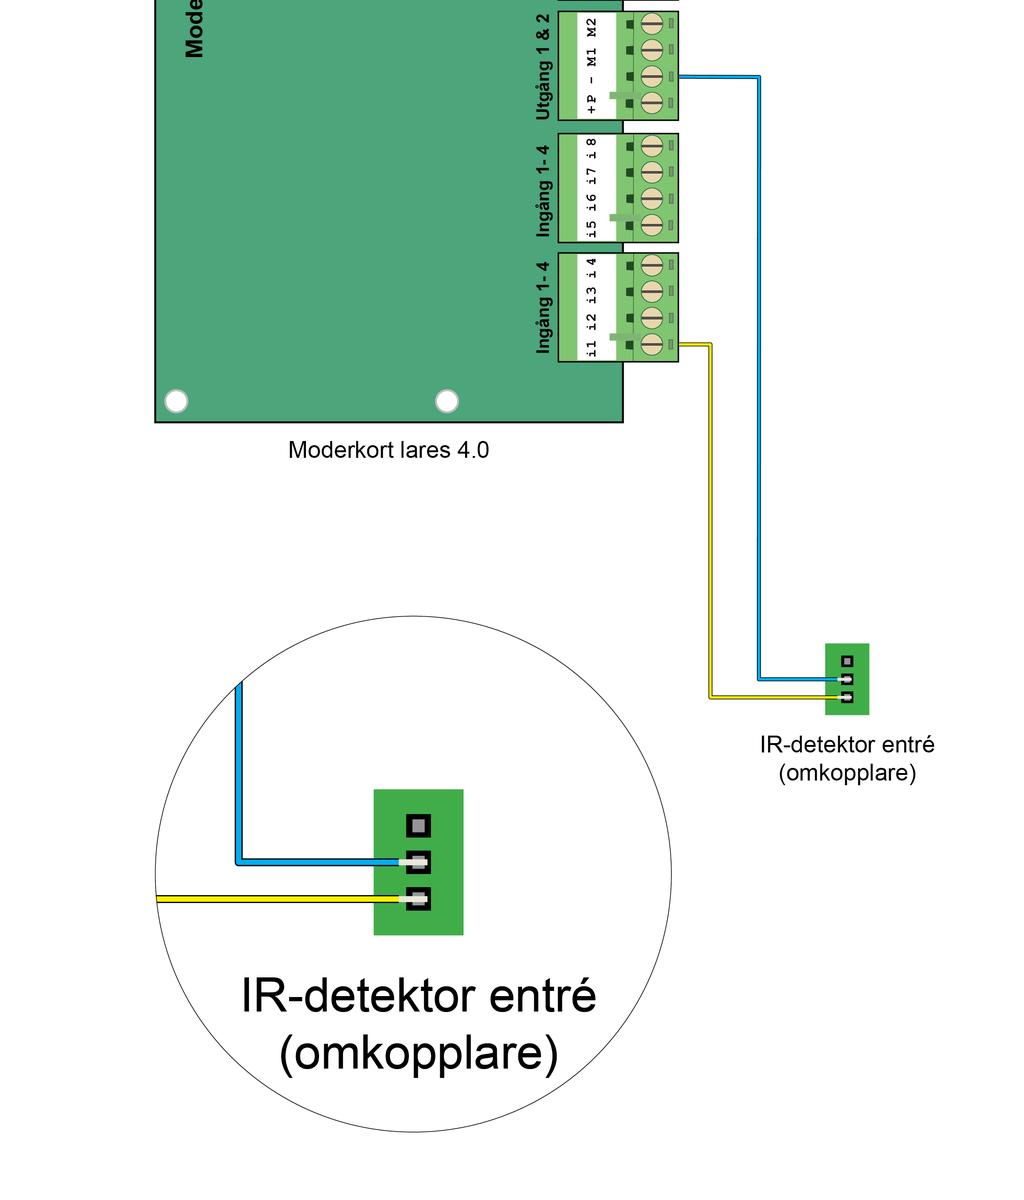 Steg 22- Koppla in IR-detektor entré (omkopplare) till moderkort lares 4.